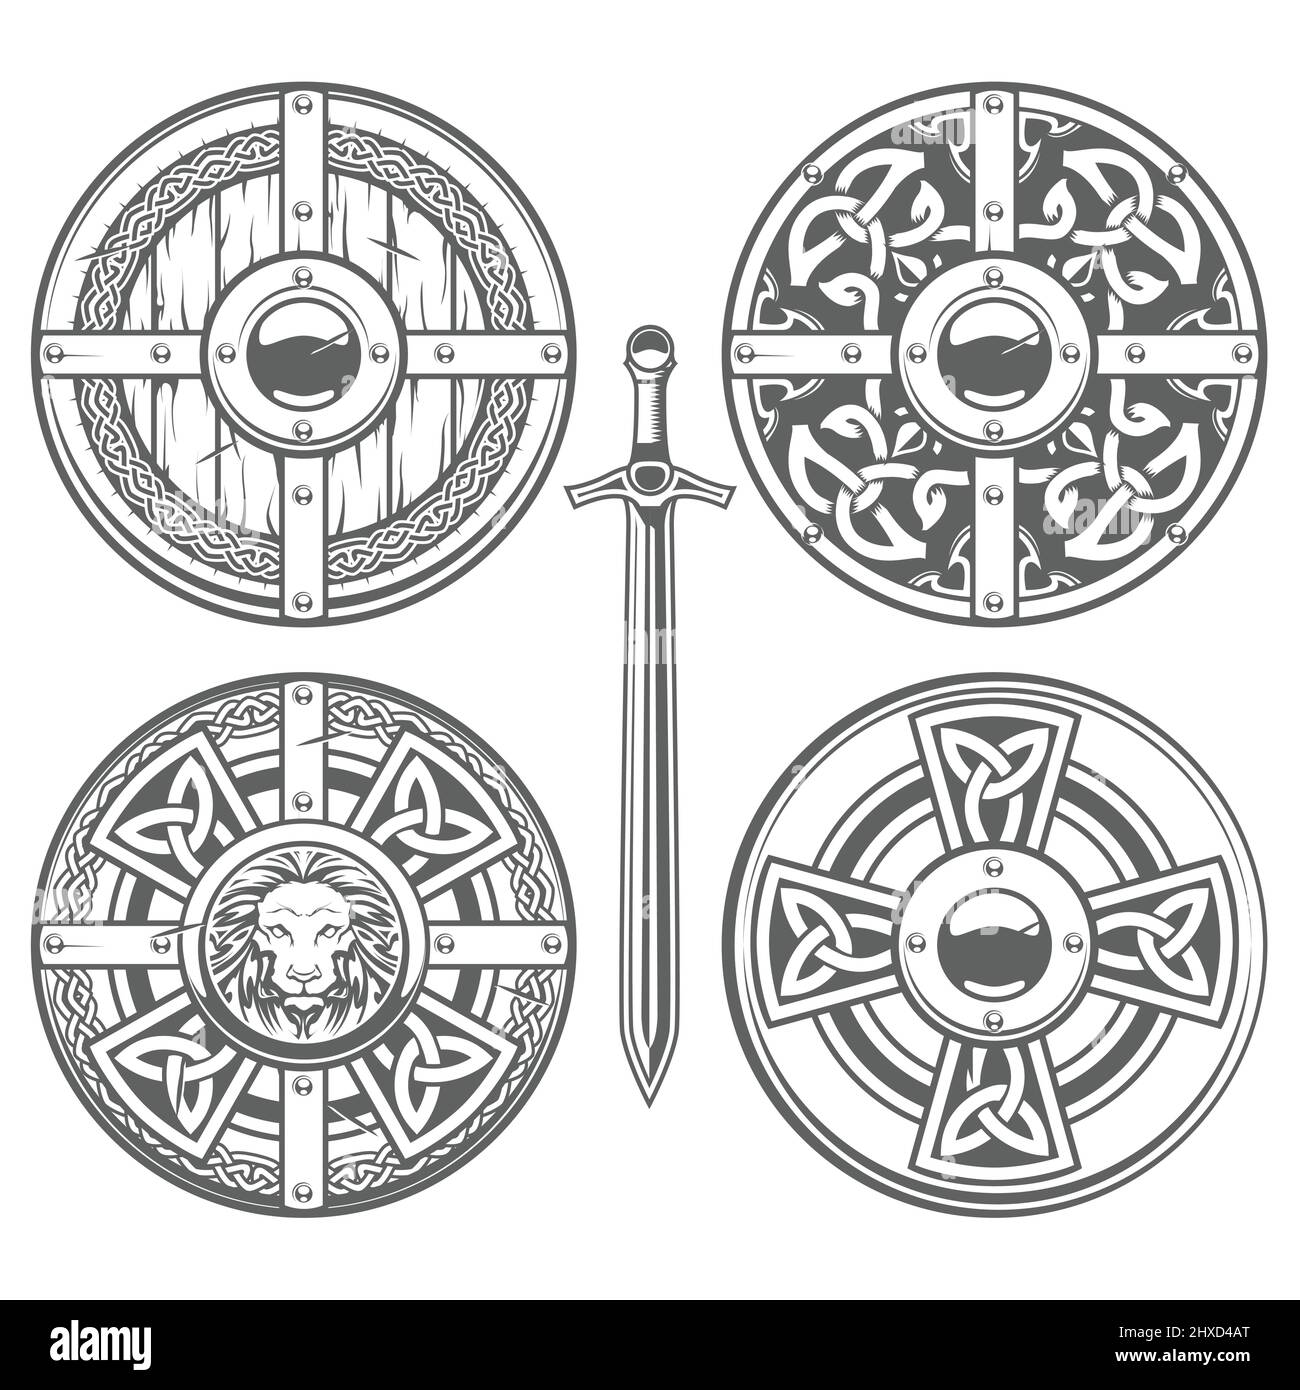 Jeu de boucliers ronds avec motif celtique et ornements médiévaux, armure de chevalier, boucliers de chevalerie, vecteur Illustration de Vecteur